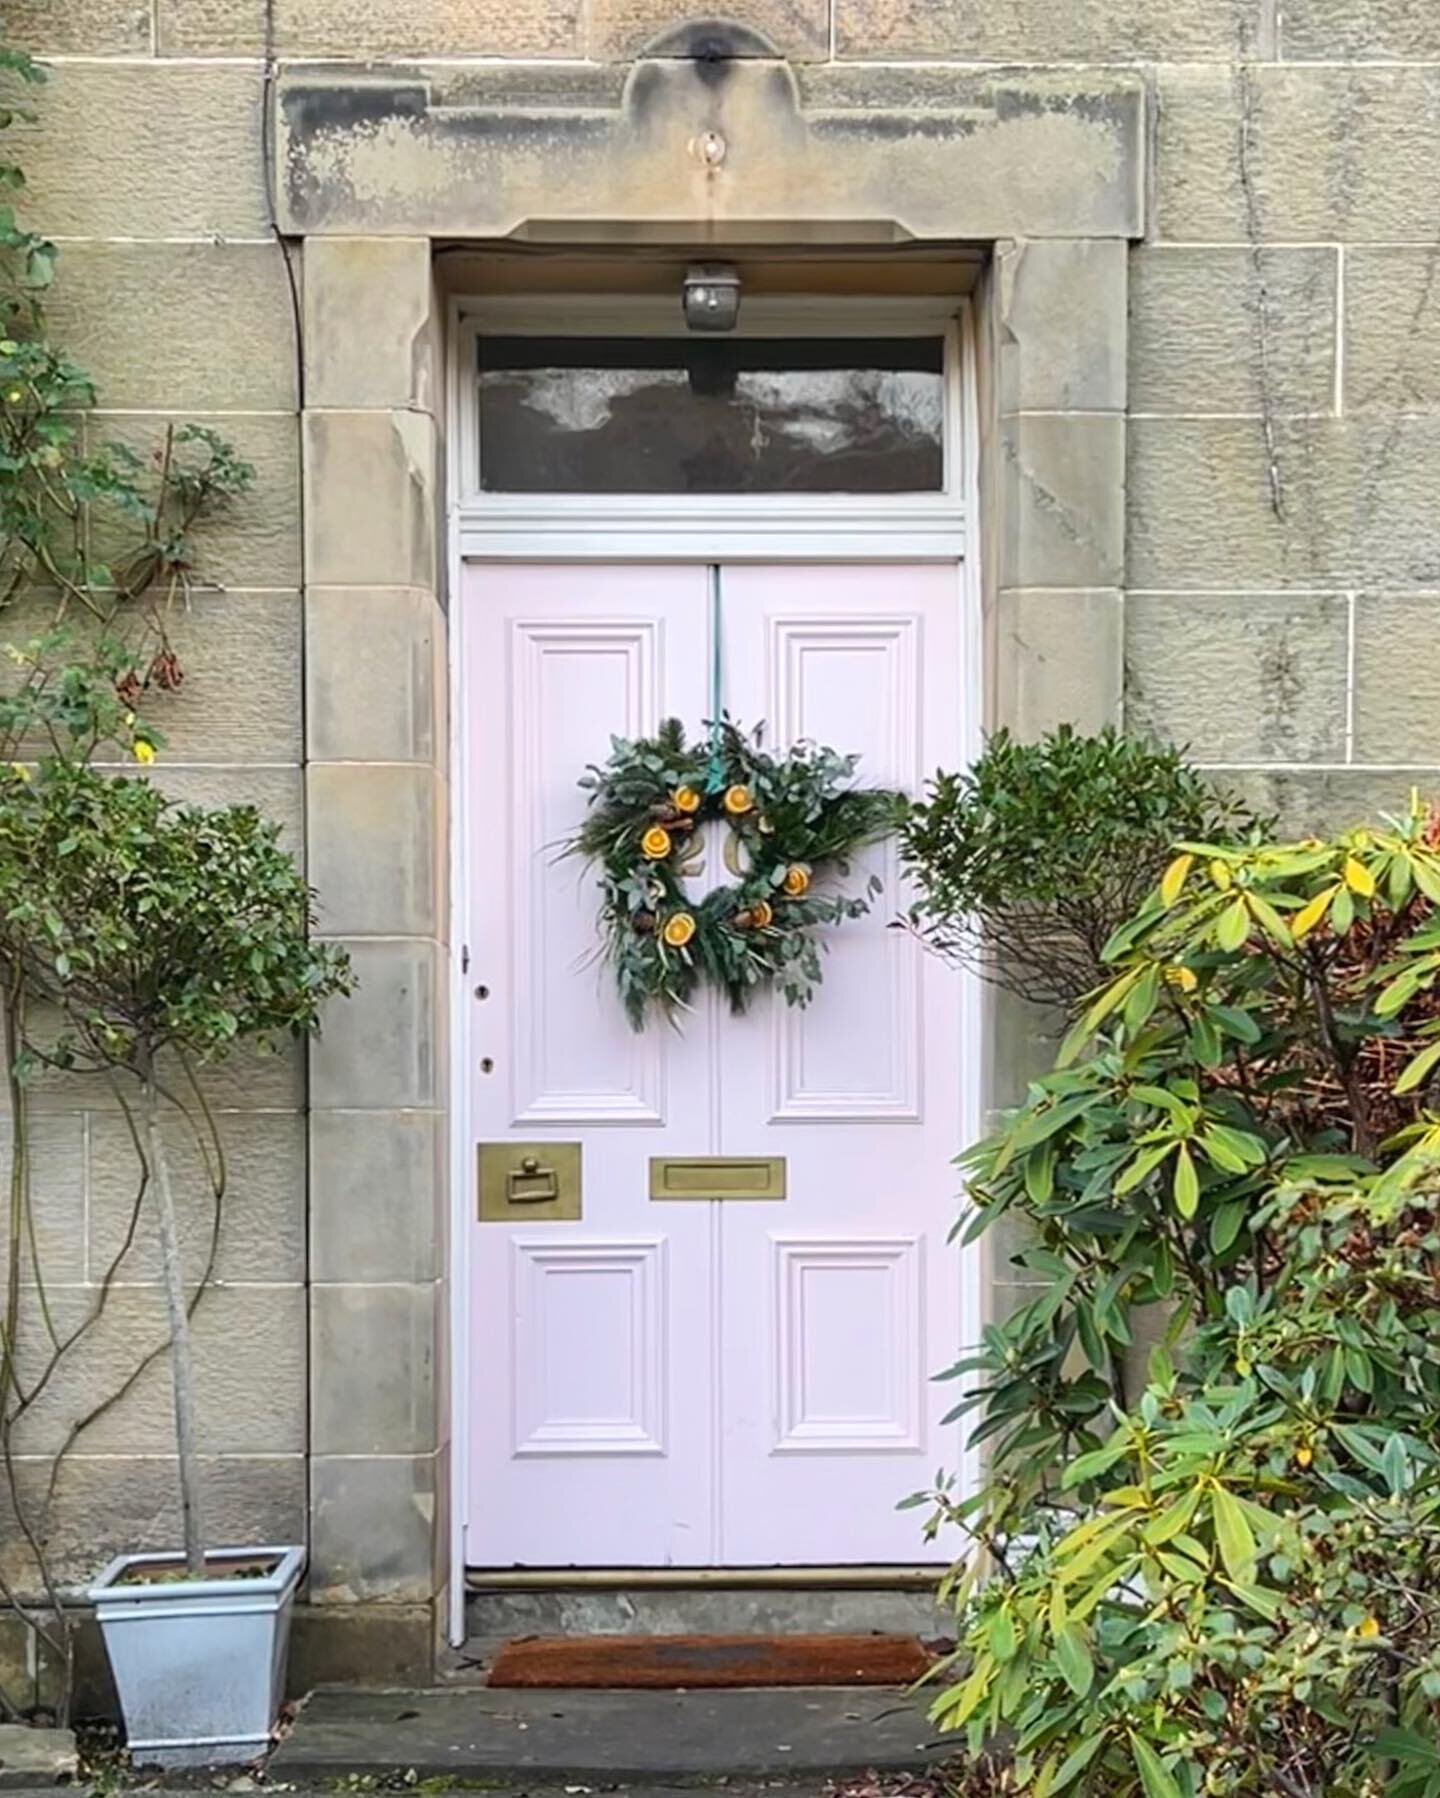 Wreath doors have started